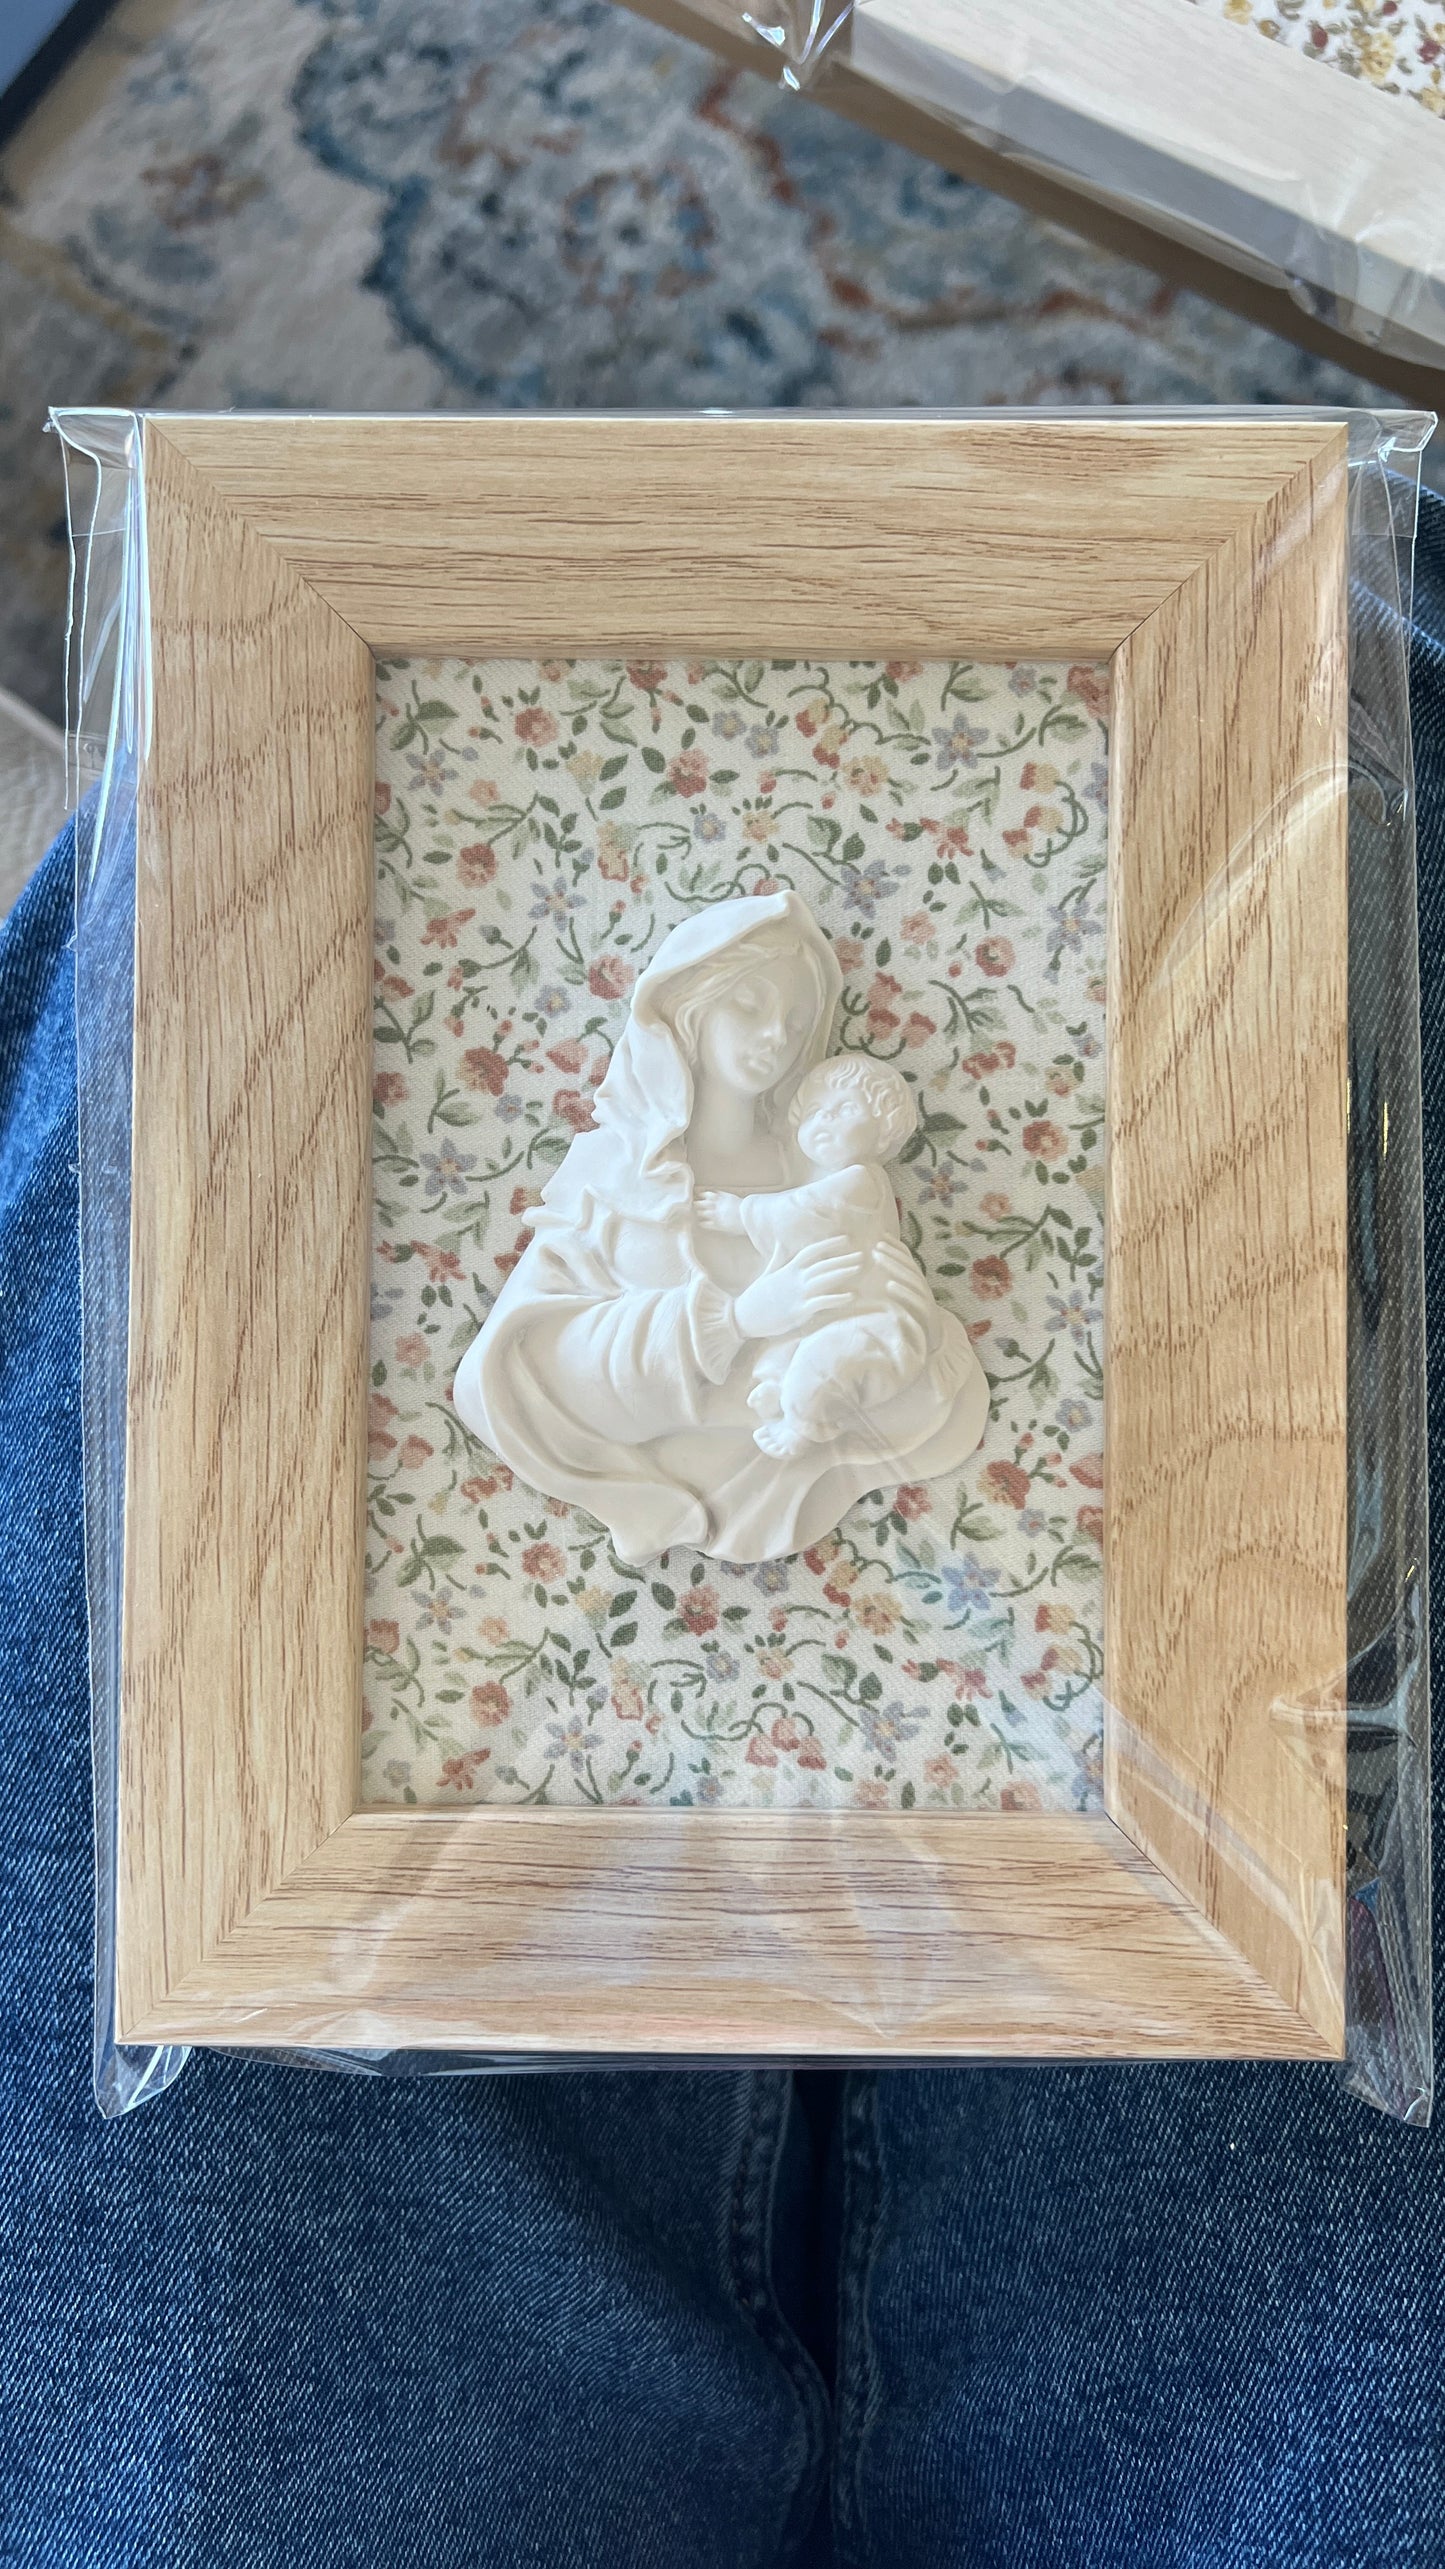 Cuadro Virgen de la Familia - Flores claritas (marco madera)